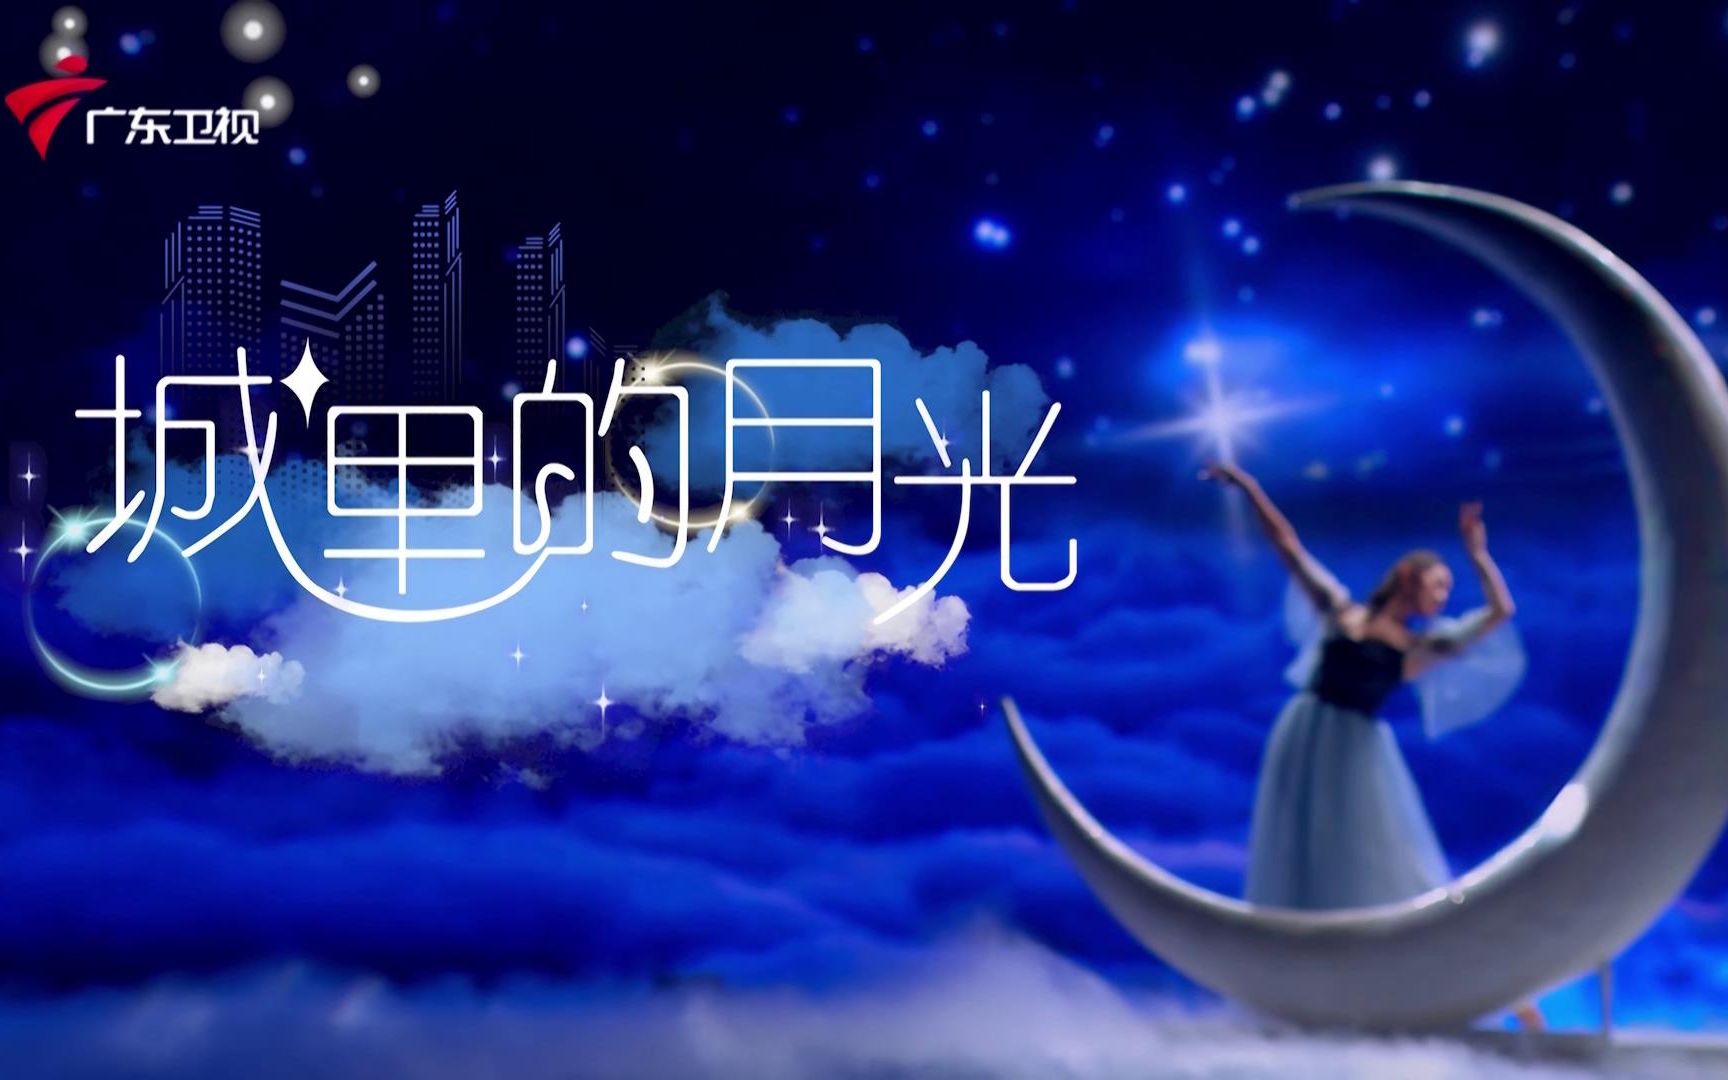 【《流淌的歌声》第二季时光盛典精彩片段】杨钰莹深情演绎甜入心底版《城里的月光》